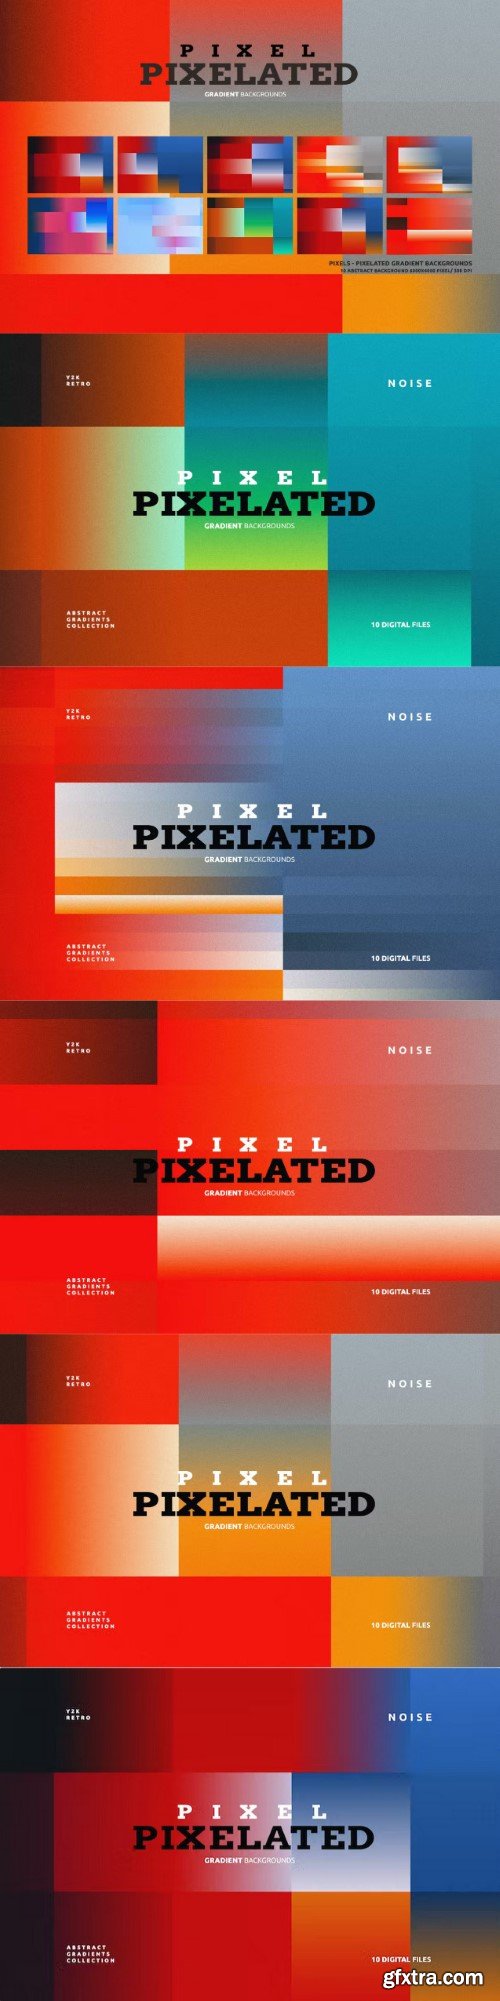 Pixels/ Pixelated Gradient Backgrounds 02